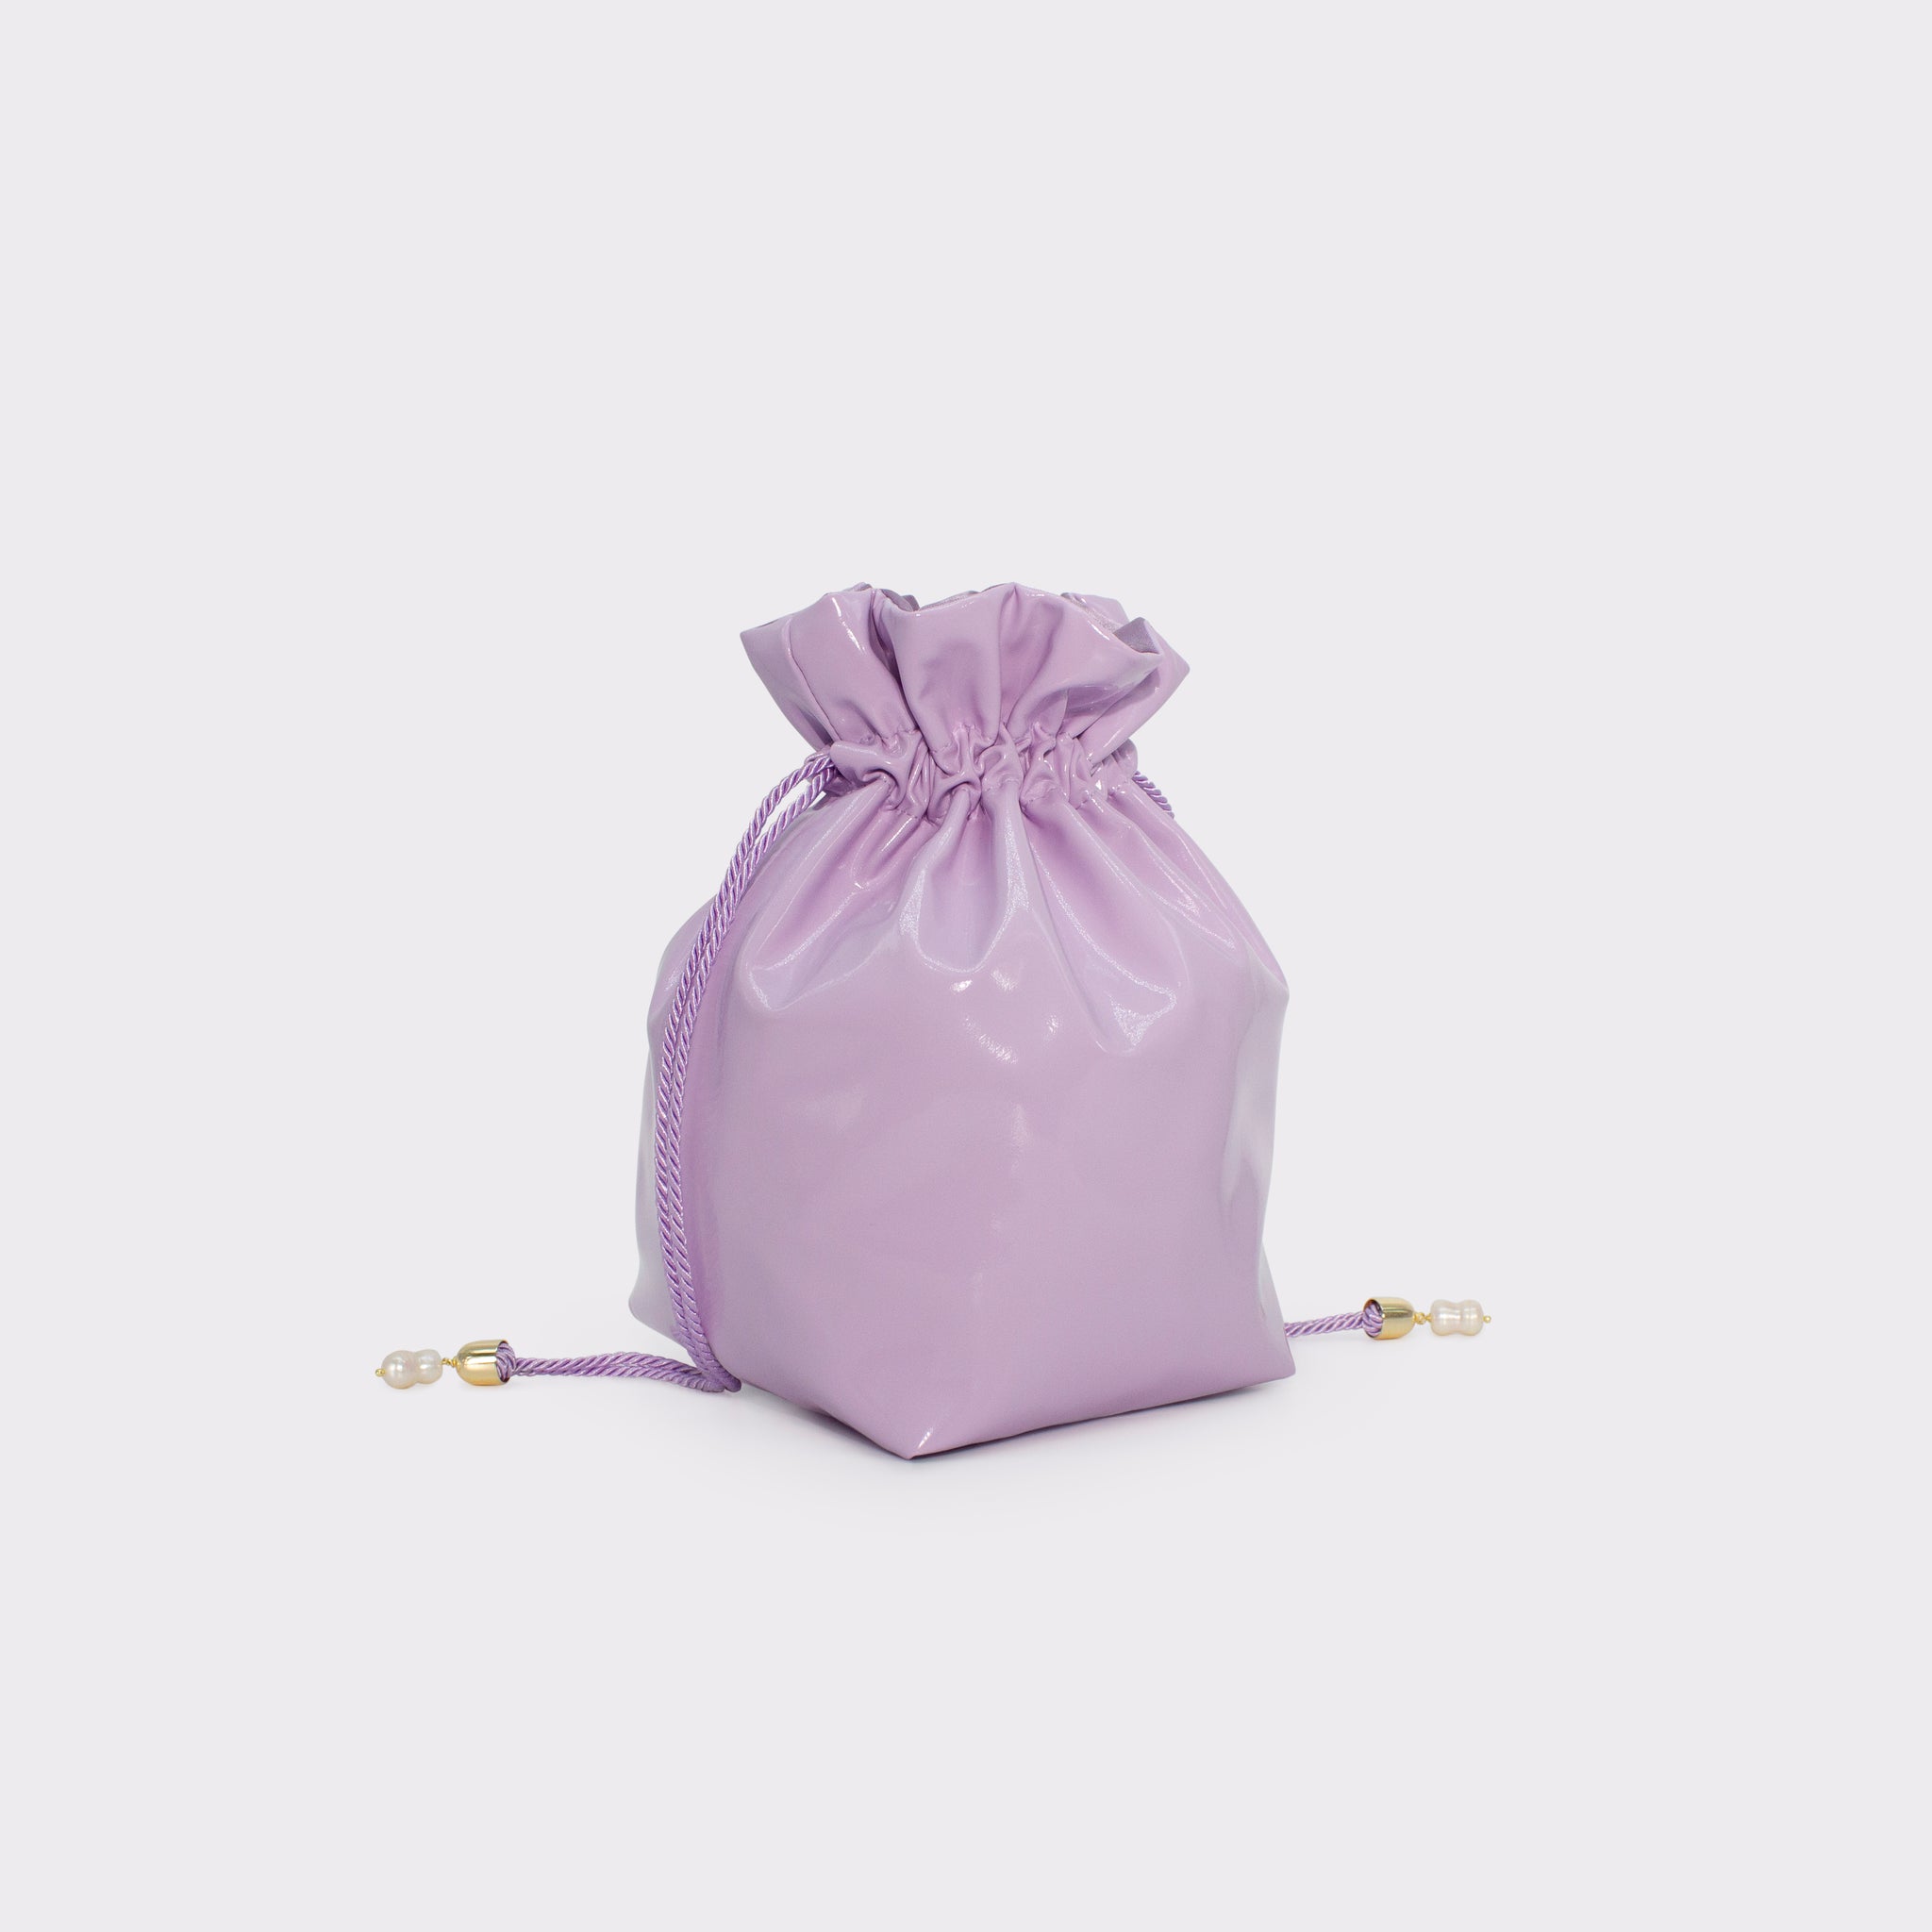 La Glossy bucket bag in colorazione orchid bloom